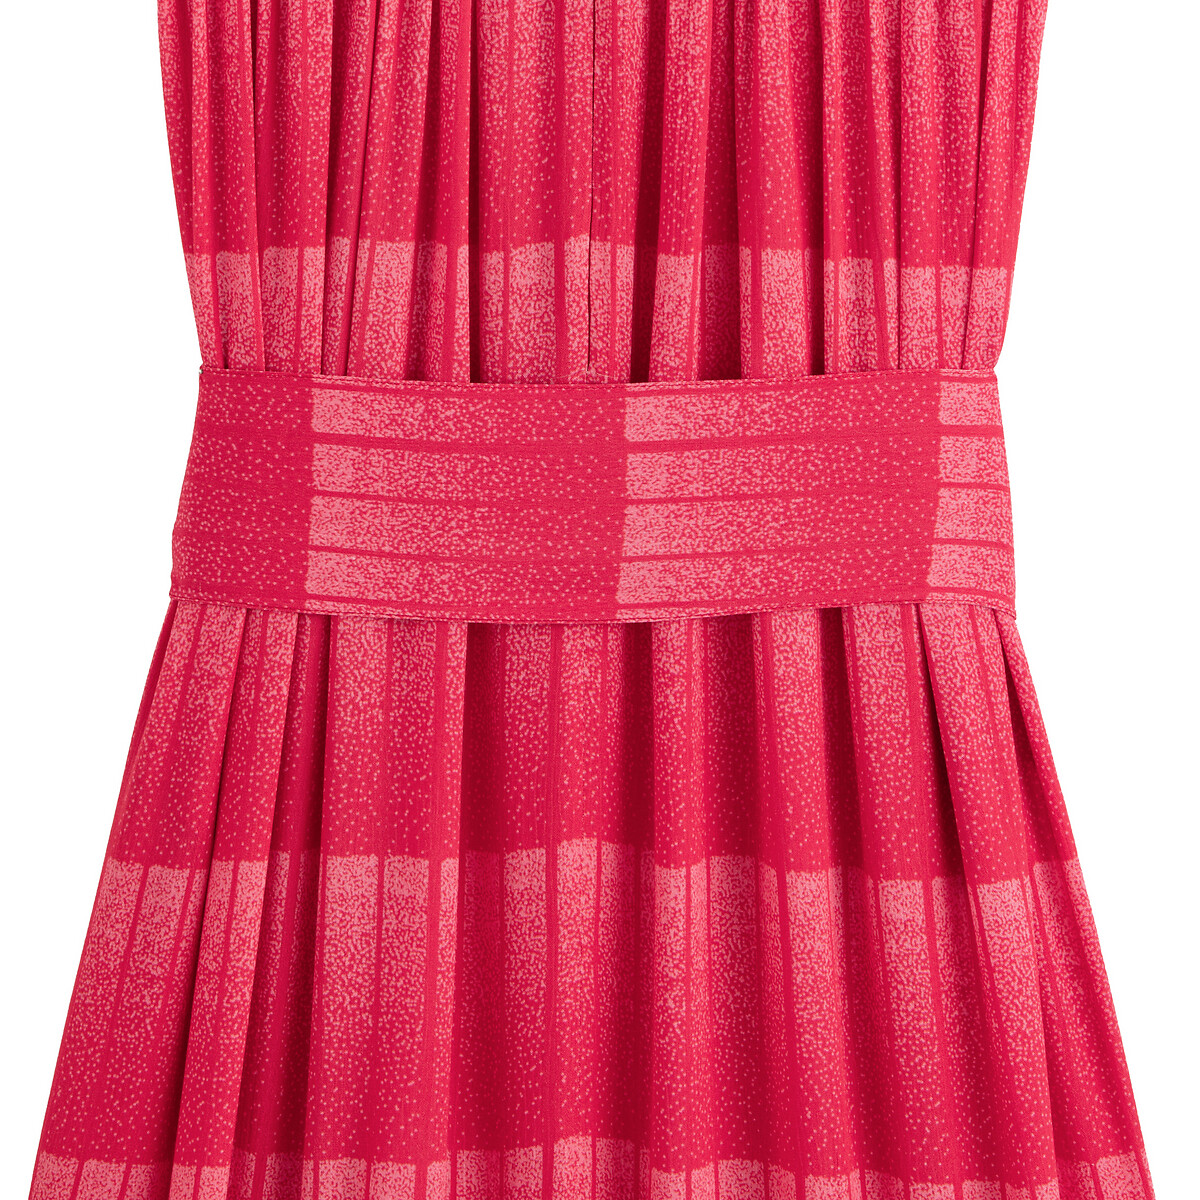 Платье LaRedoute Длинное без рукавов 44 (FR) - 50 (RUS) красный, размер 44 (FR) - 50 (RUS) Длинное без рукавов 44 (FR) - 50 (RUS) красный - фото 4